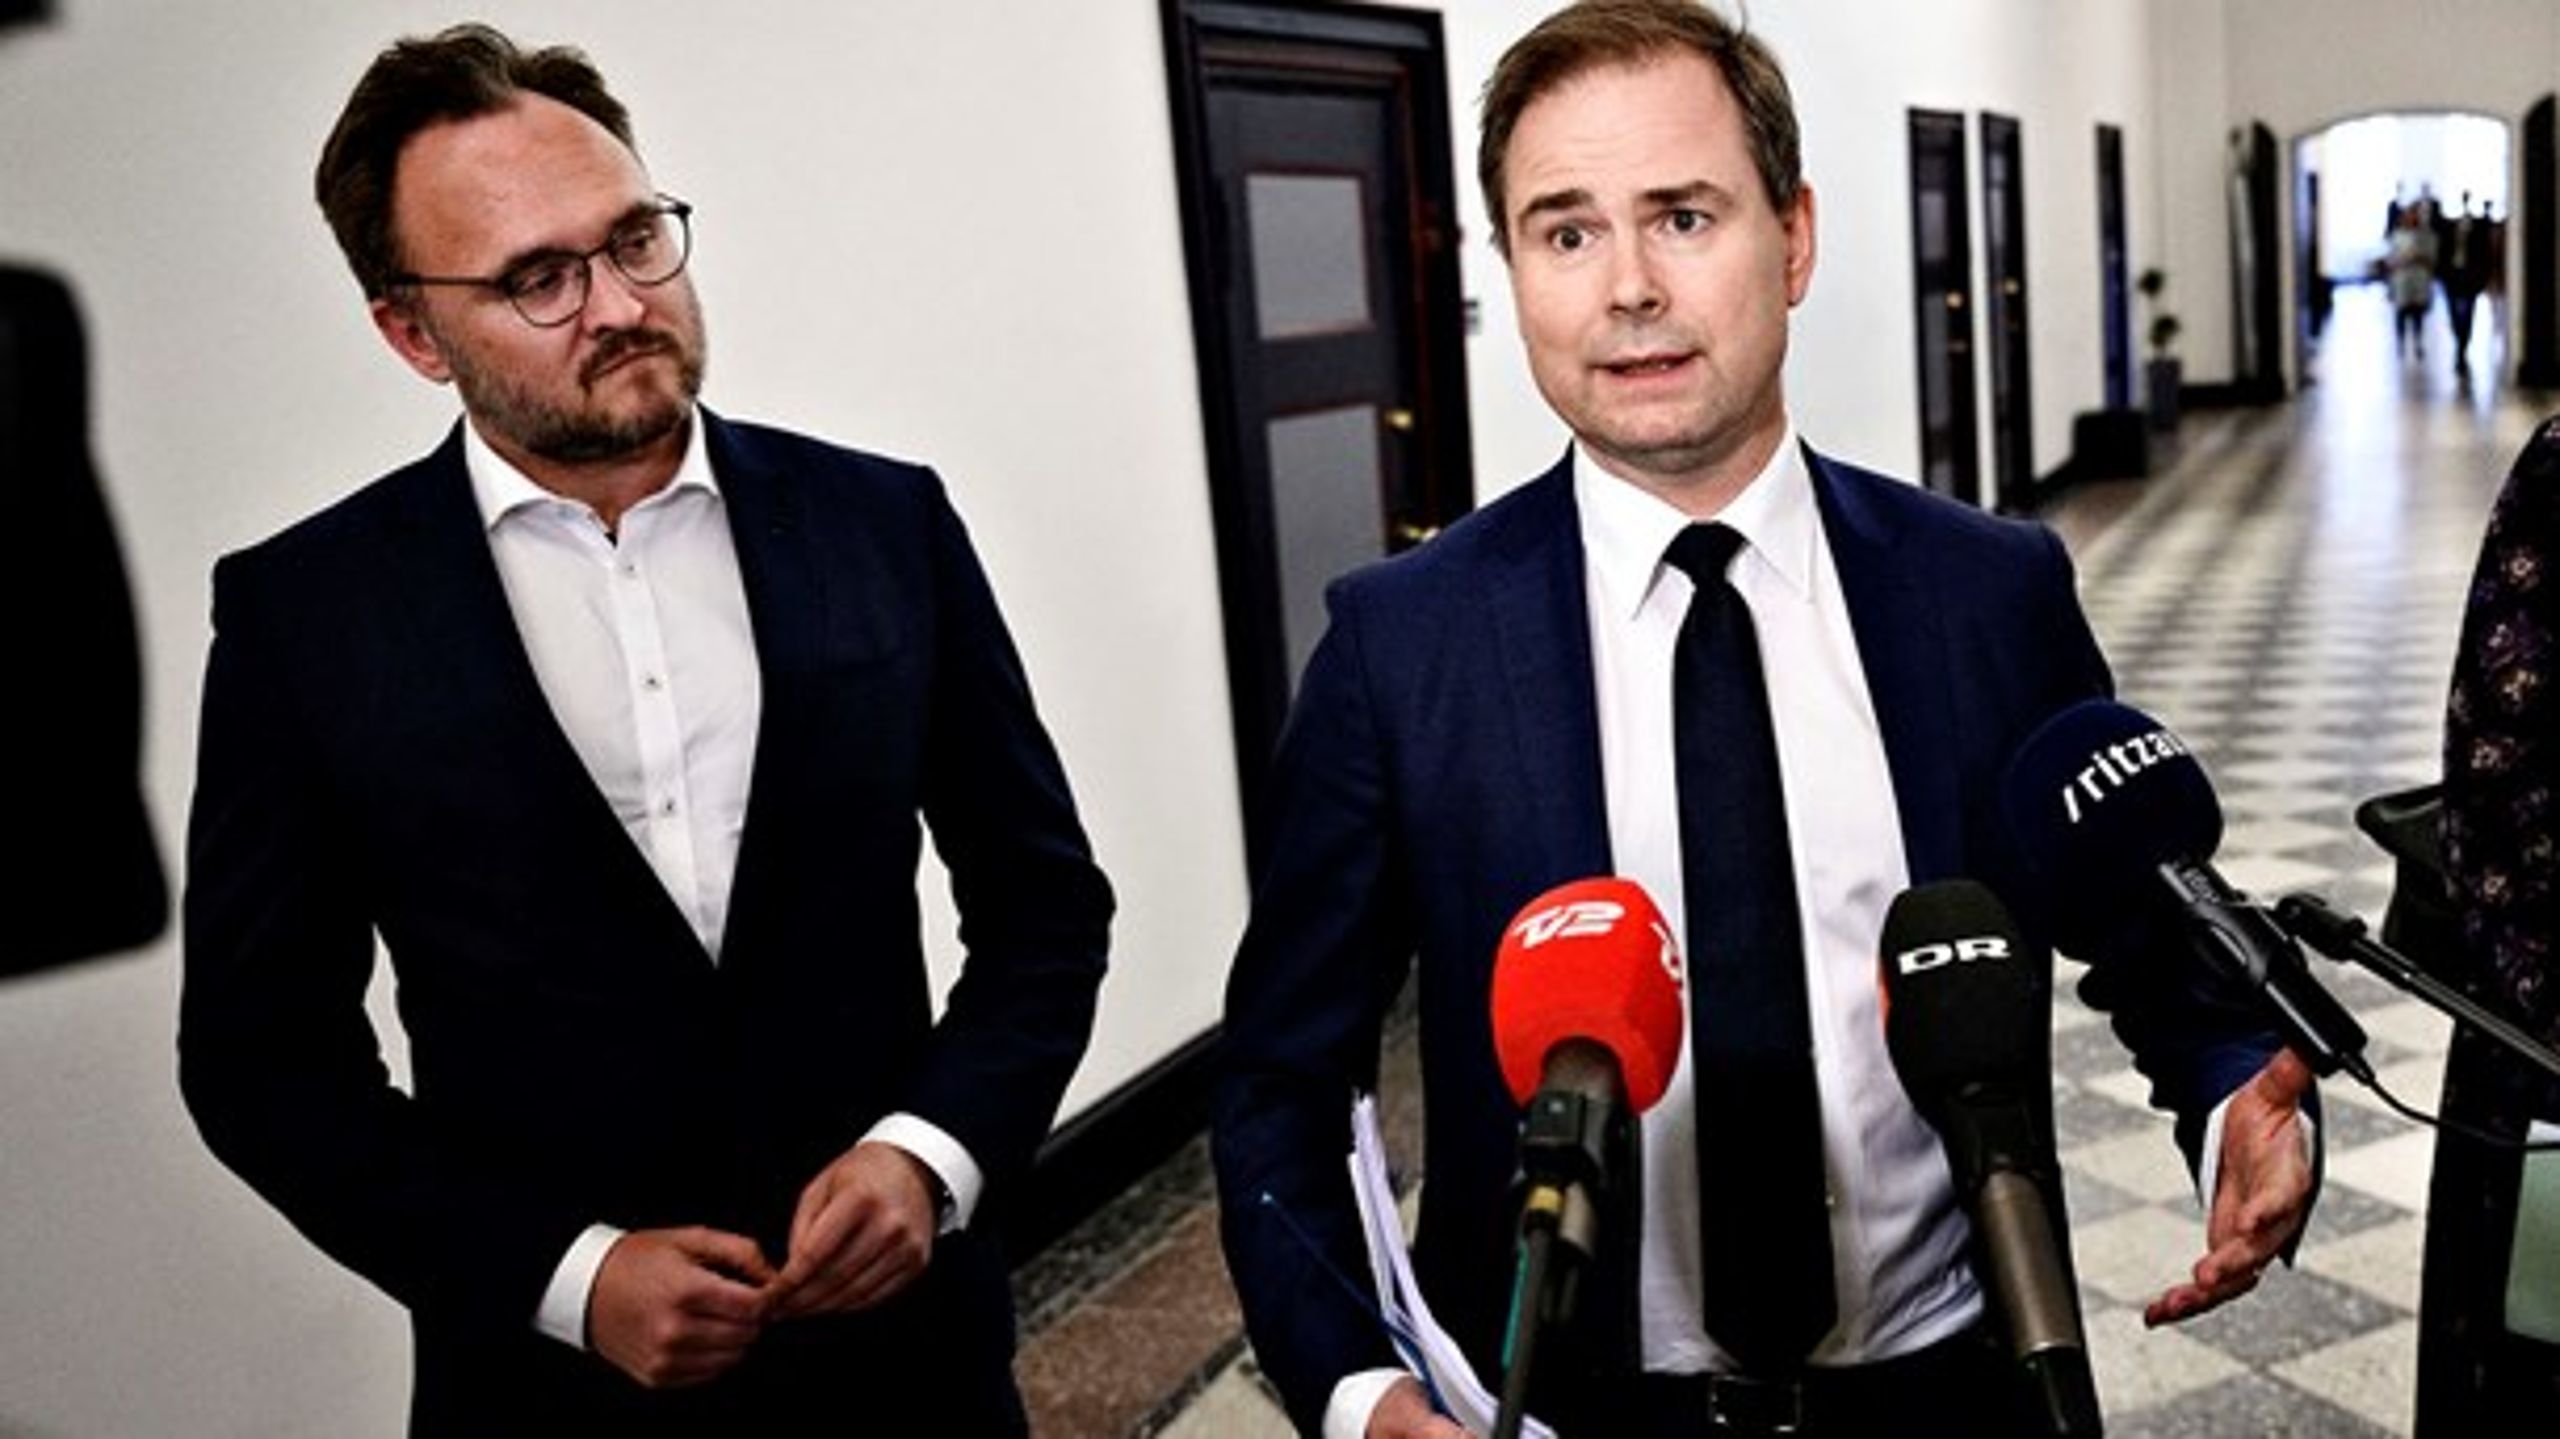 Finansminister Nicolai Wammen og klima- og energiminister Dan Jørgensen er bare to ud af fire ministre, som skal stå skoleret i Folketinget mandag og forklare, hvordan regeringen vil gå til forhandlingerne om EU's næste langtidsbudget.